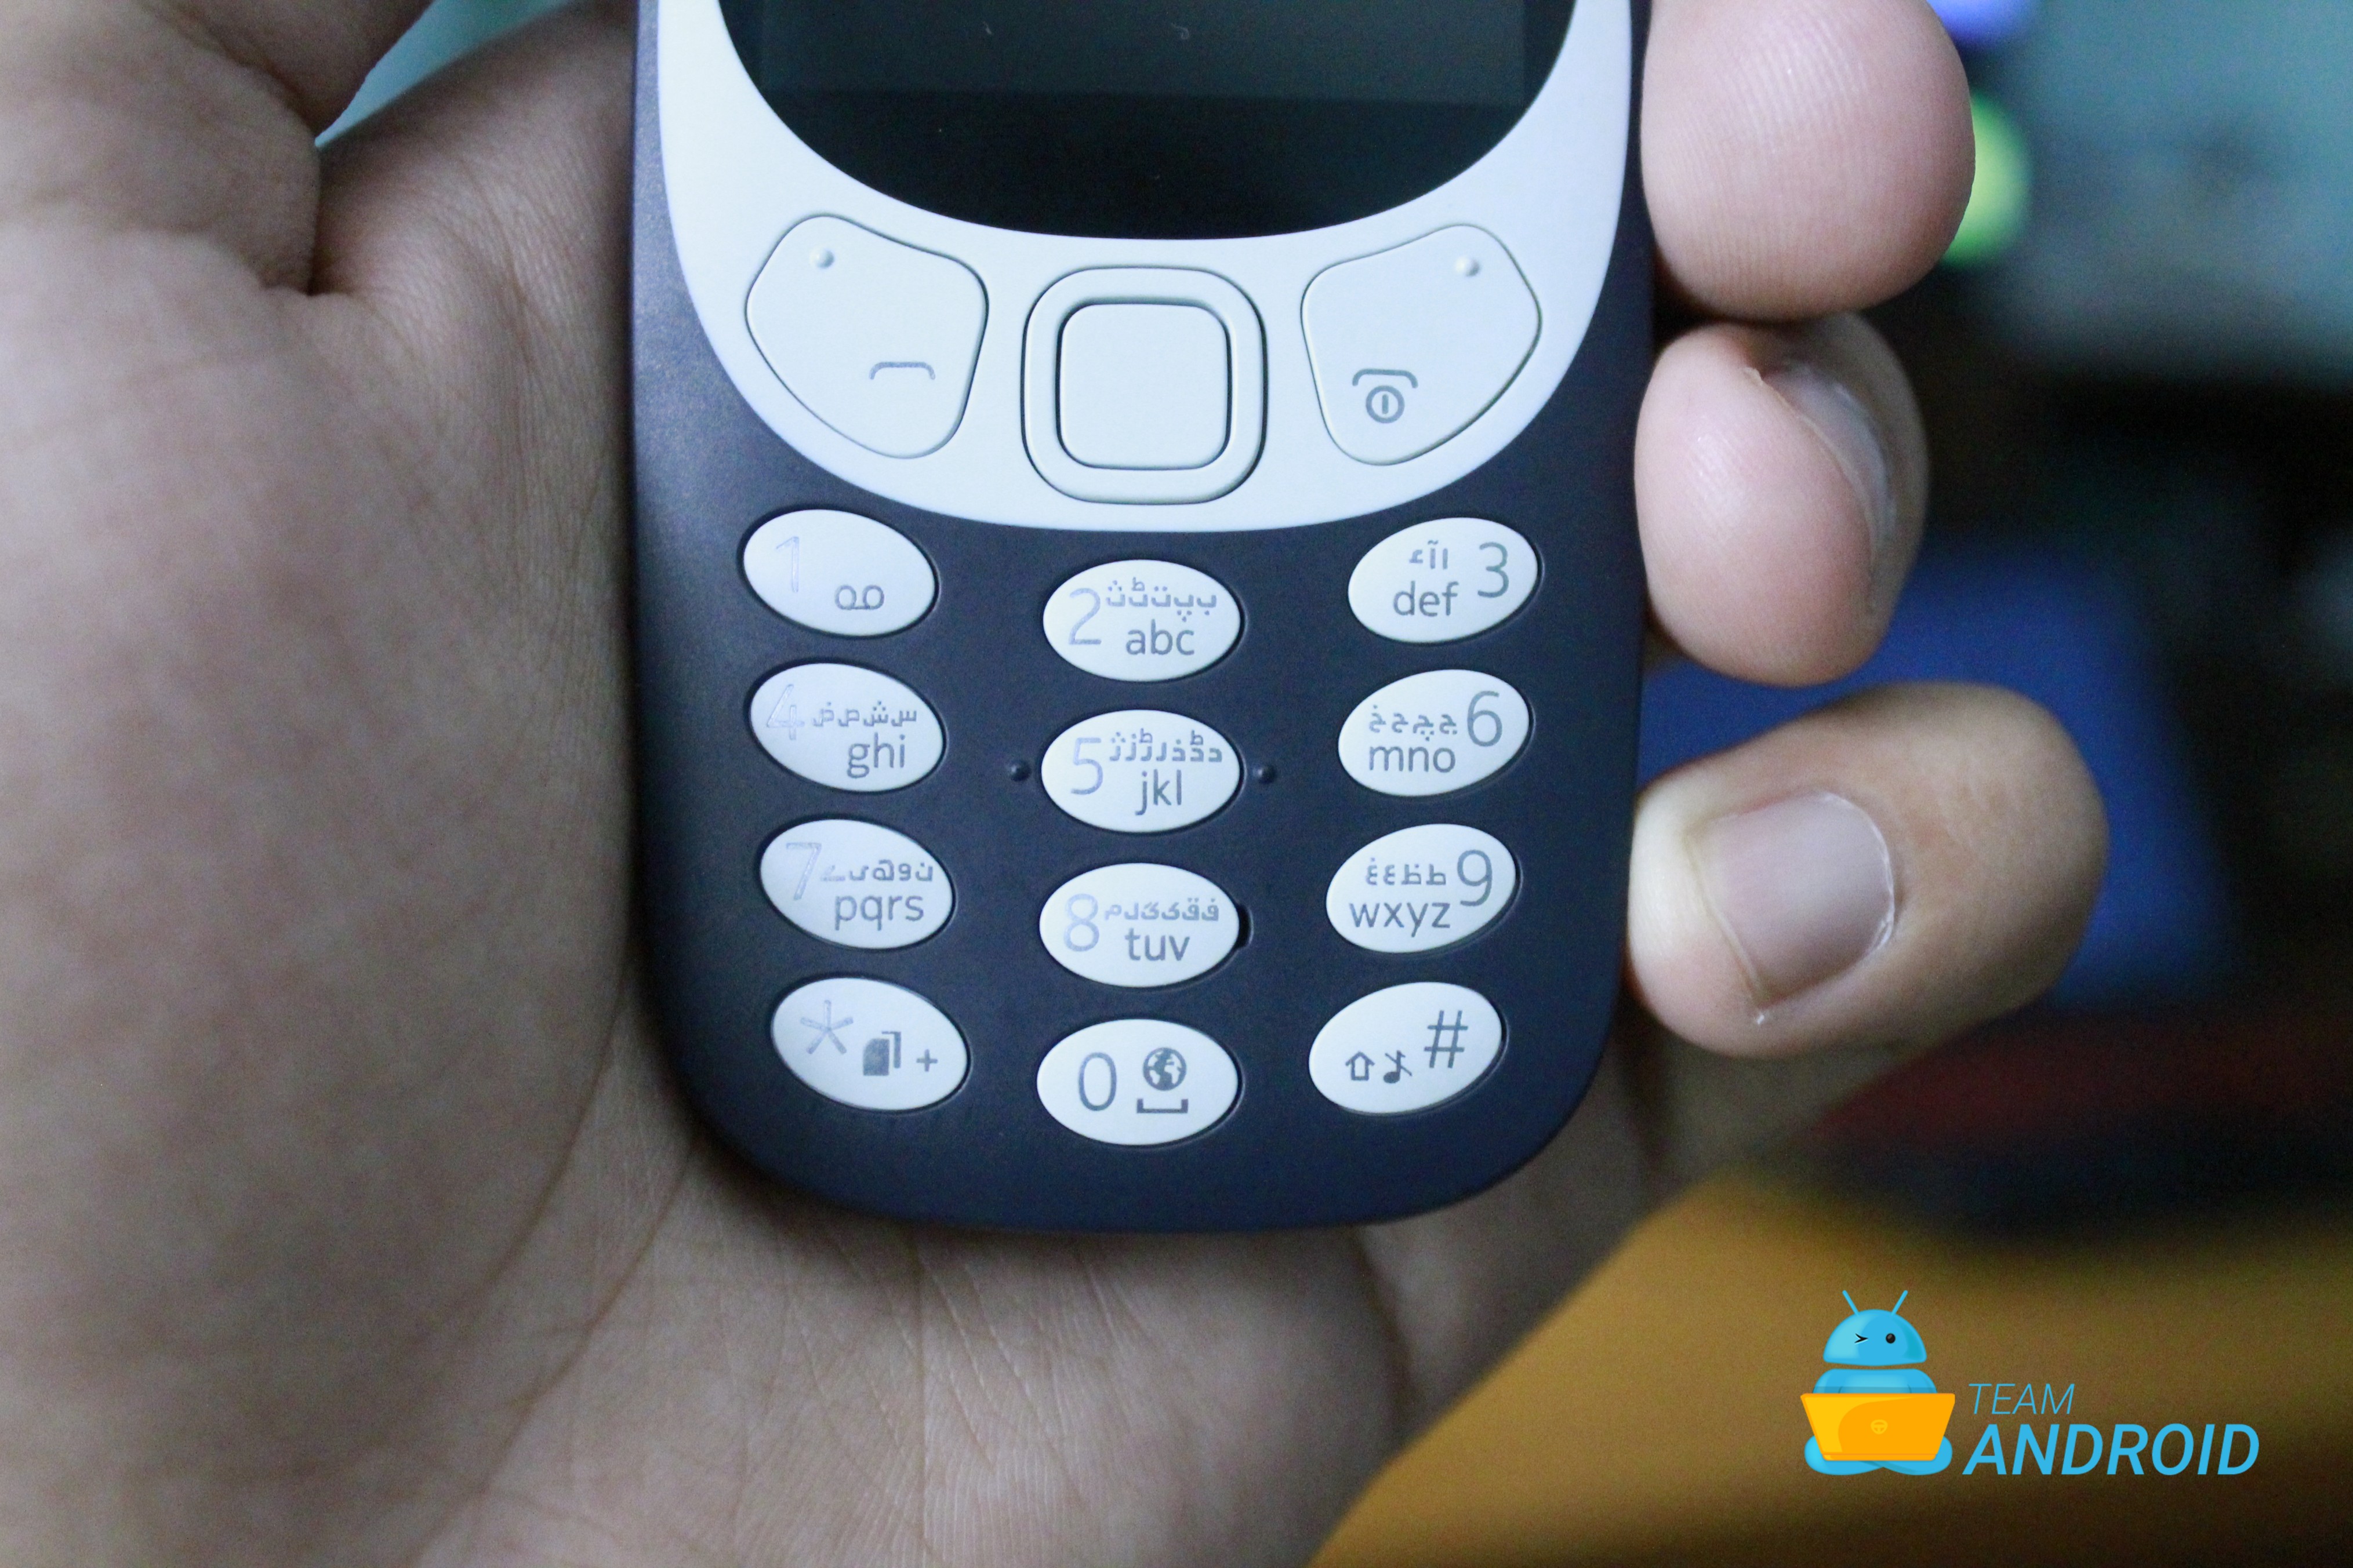 Nokia 3310 Review 3